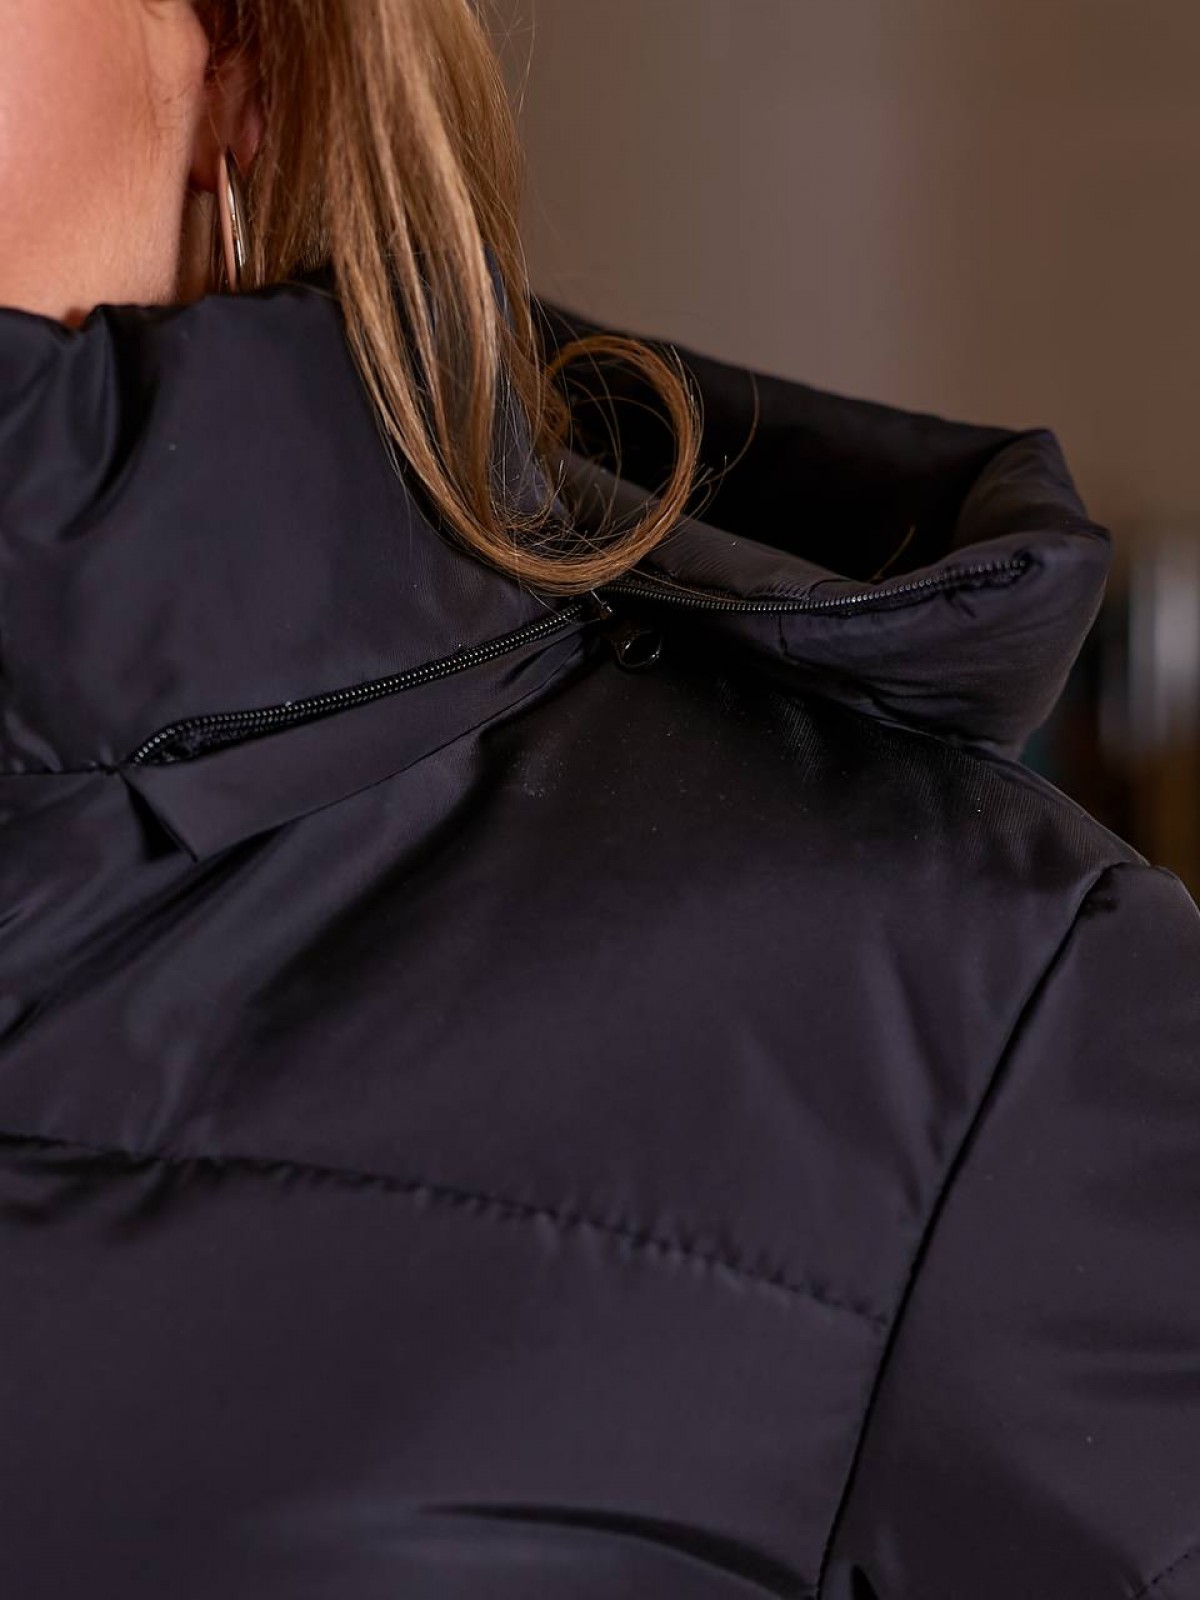 Жіноча весняна куртка Канада чорного кольору р.48/50 406443